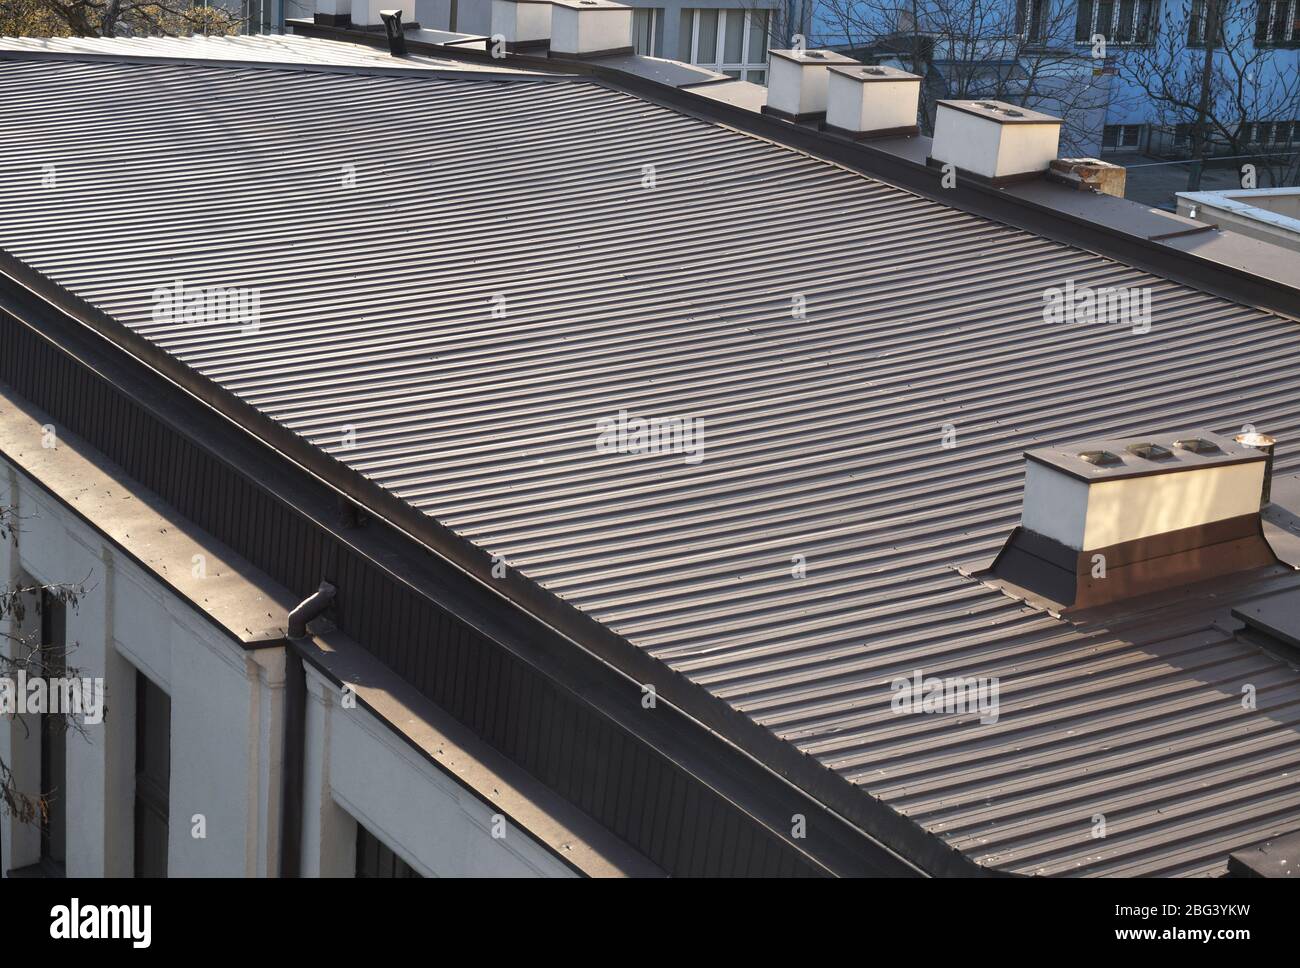 Das Dach ist mit lackierten Metallpaneelen überzogen. Großer Dachbereich des Gebäudes. Stockfoto